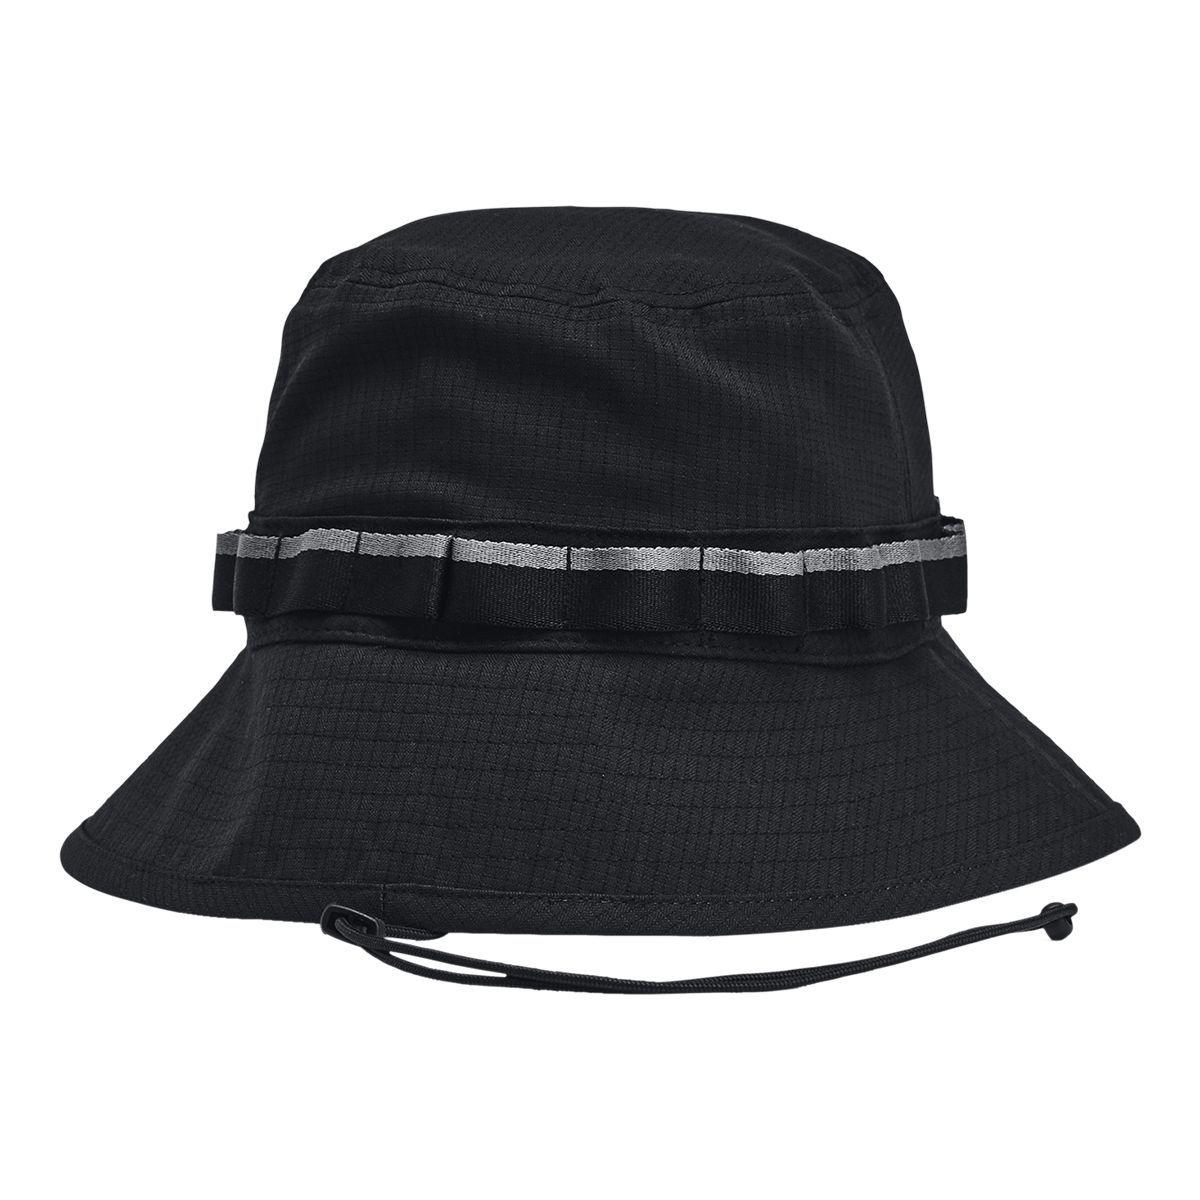 Under Armour Men's ArmourVent Bucket Hat - Black, L/Xl